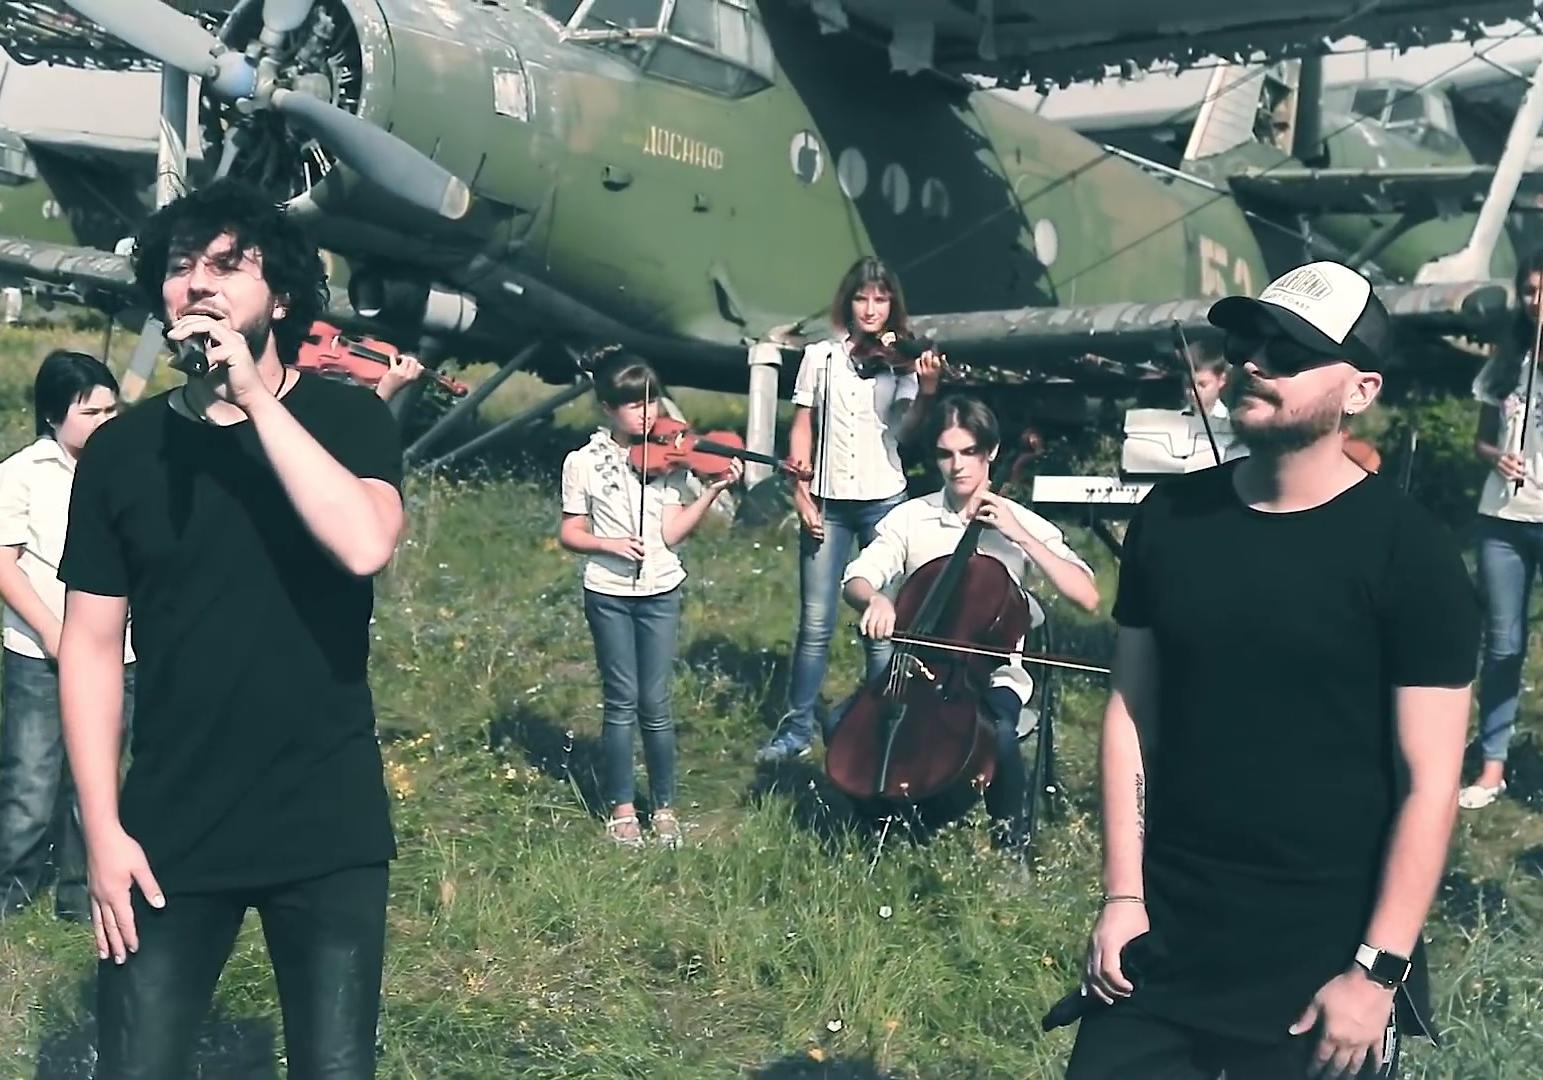 Новость - Досуг и еда - Популярная украинская группа записала клип с юными запорожскими музыкантами (ВИДЕО)